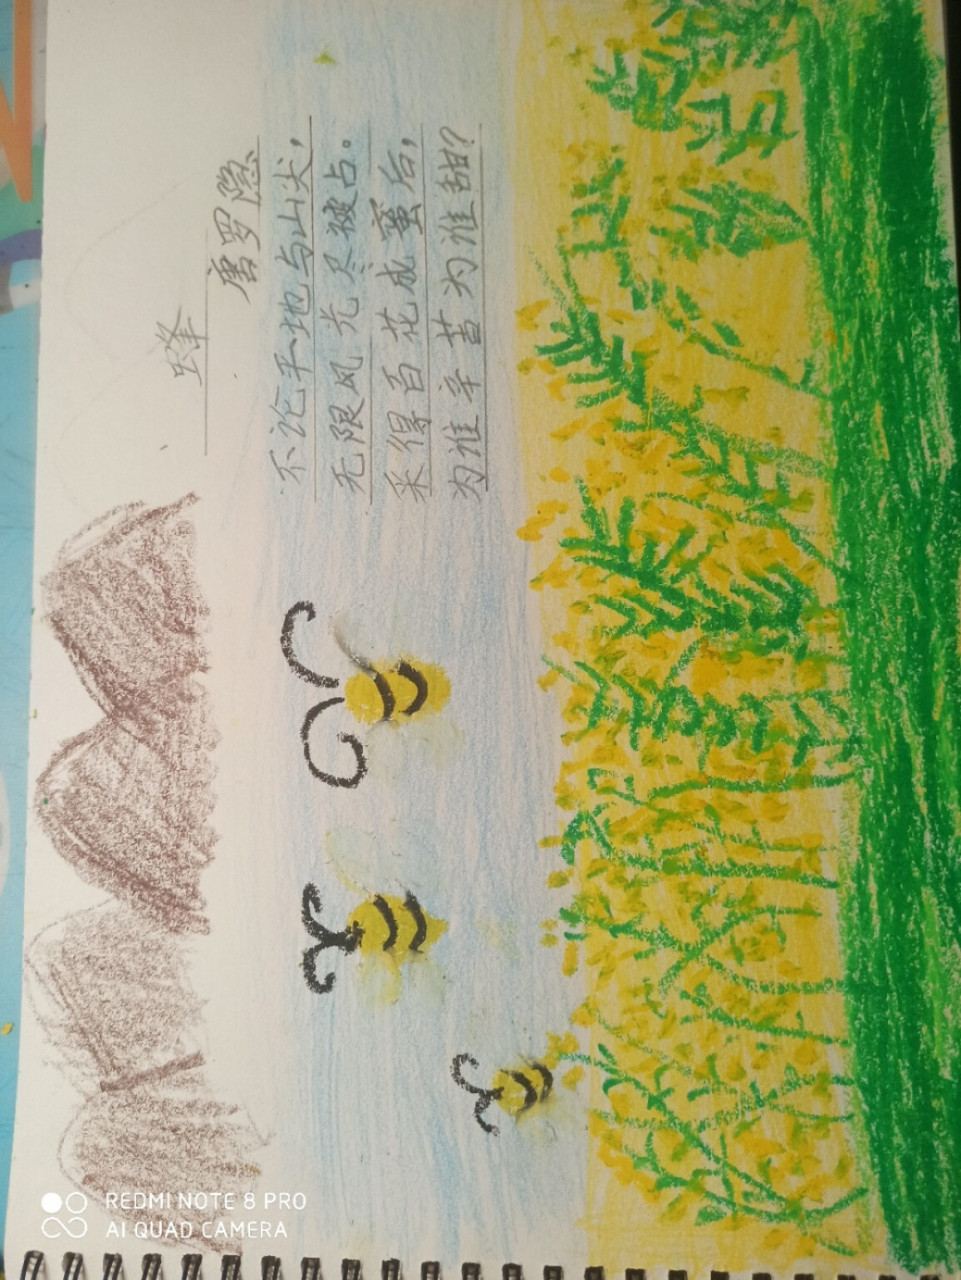 蜂的古诗配画简单图片